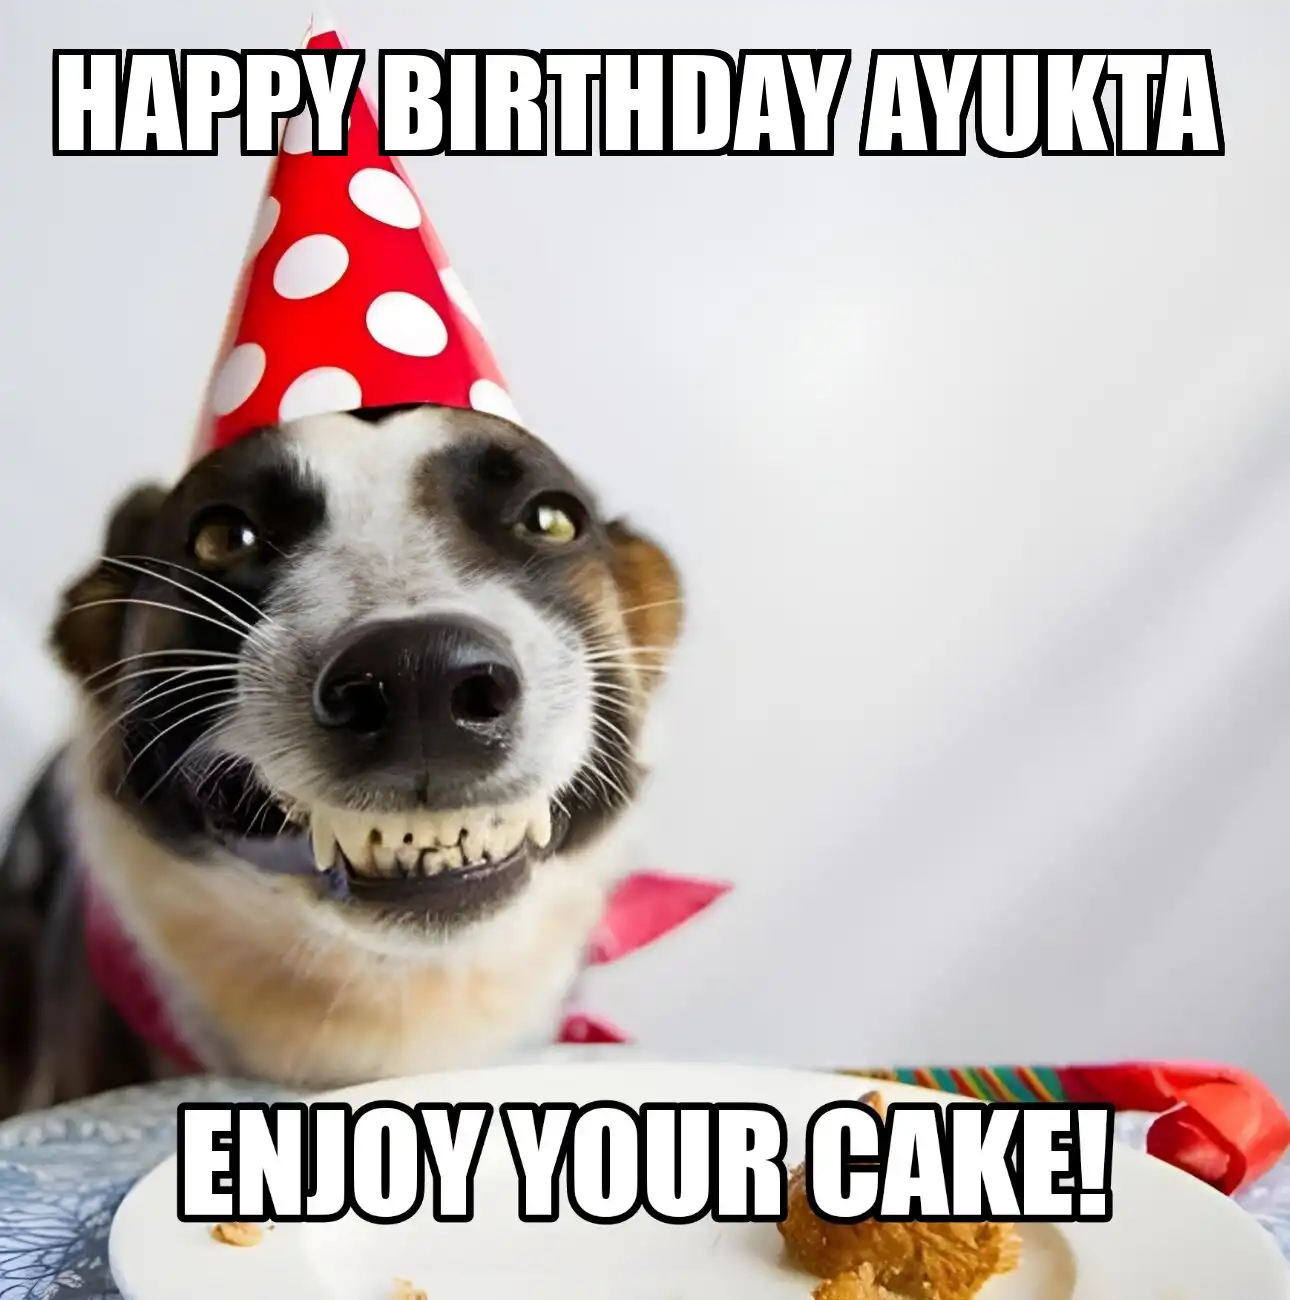 Happy Birthday Ayukta Enjoy Your Cake Dog Meme